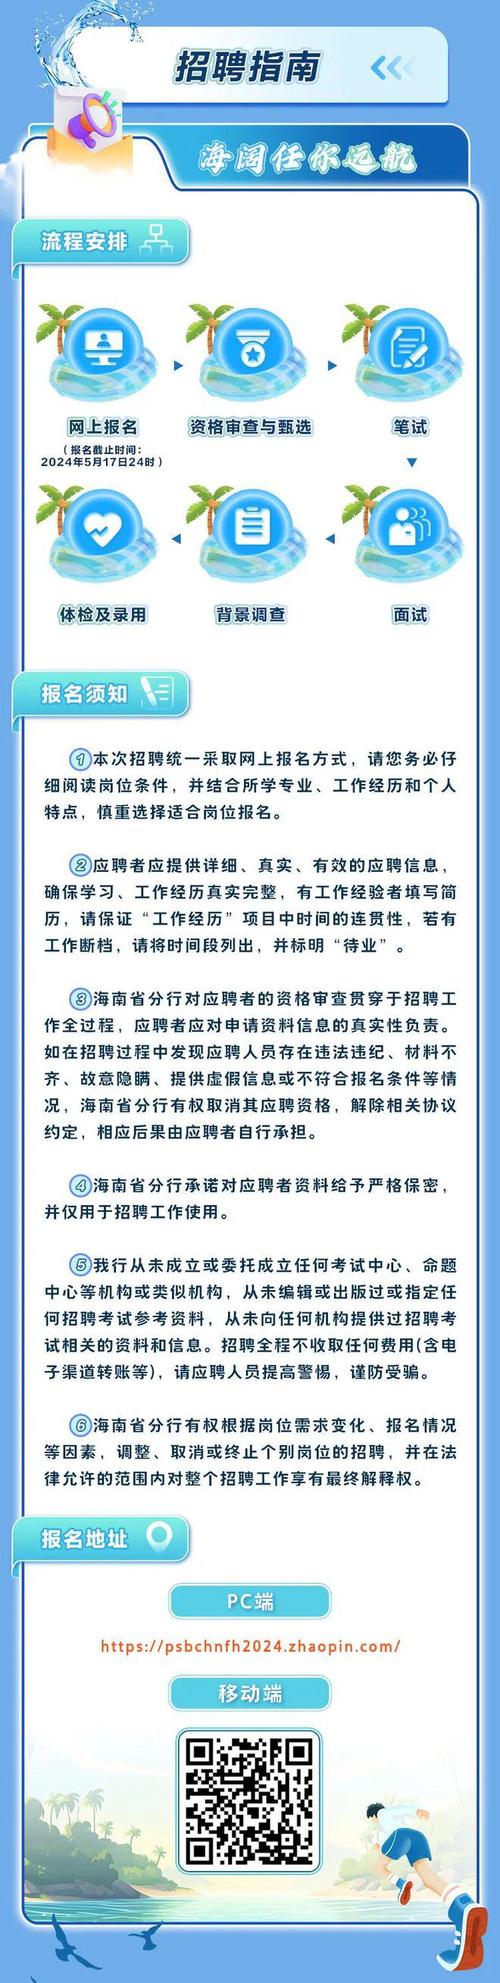 中国邮政集团领导班子调整公示